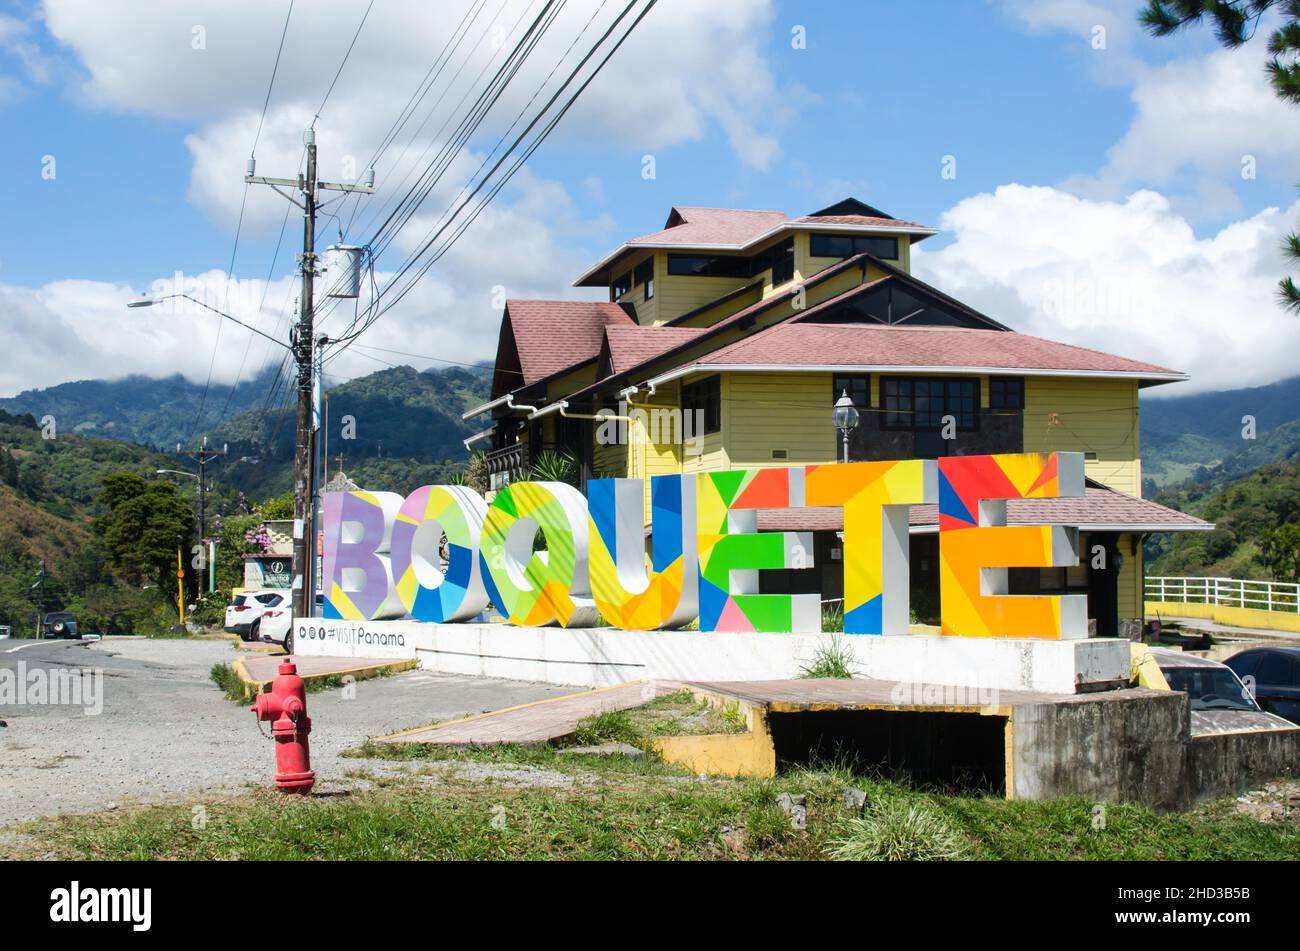 Boquete, a very popular travel destination in Chiriqui, Panama Stock Photo